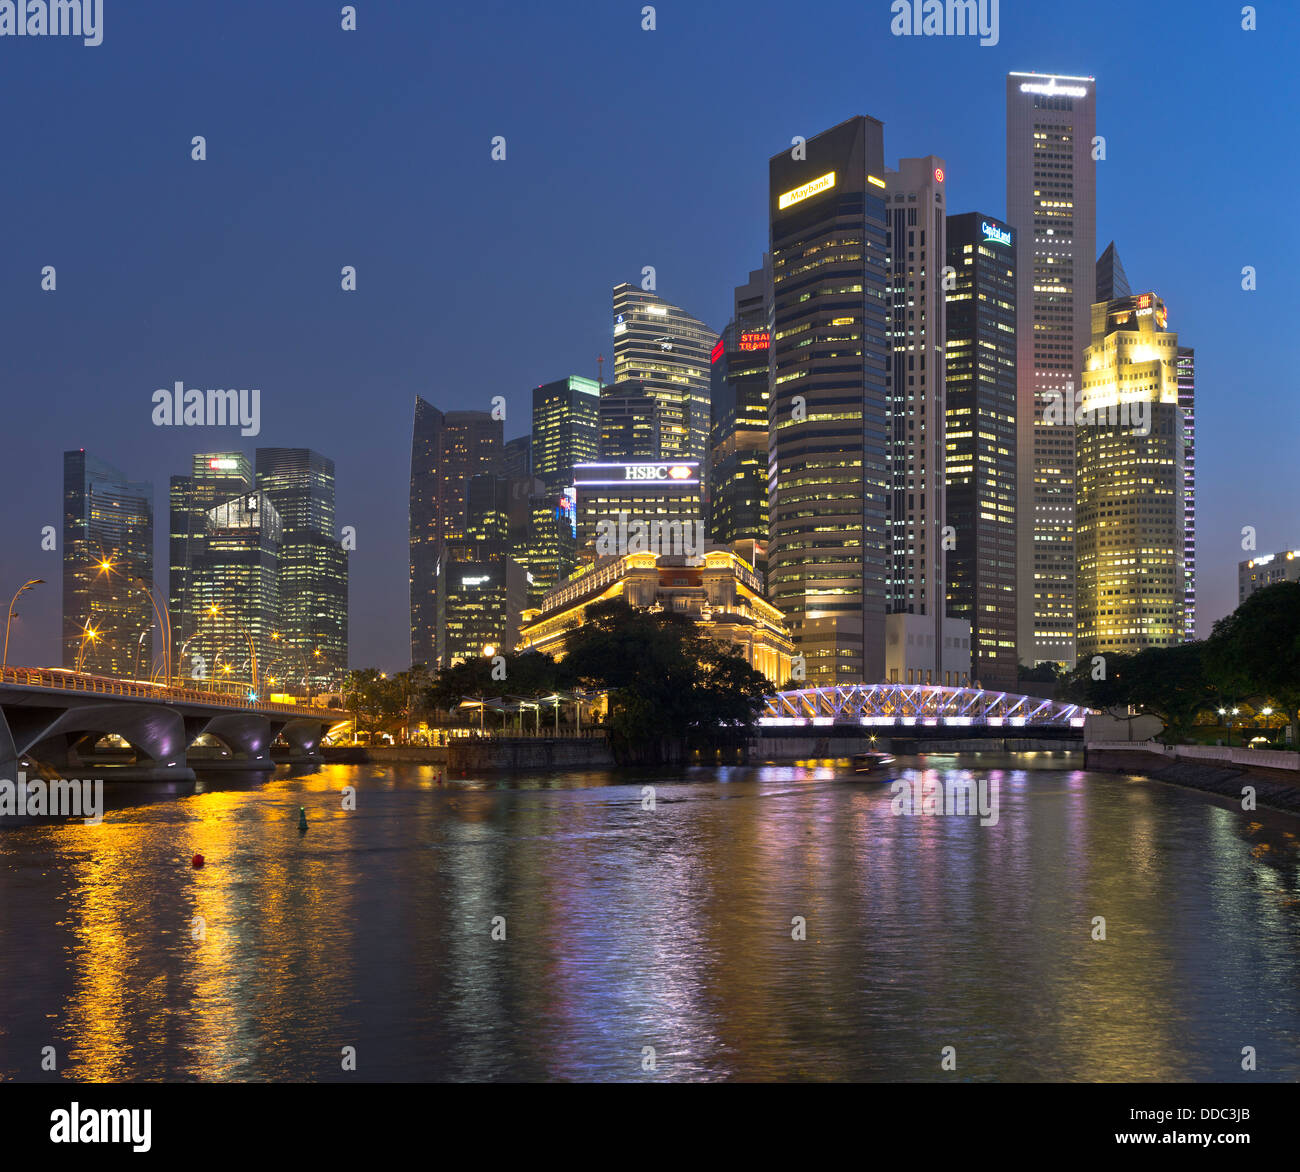 Dh Rivière Singapour SINGAPOUR CENTRE-VILLE gratte-ciel soir nuit lumières crépuscule ville gratte-ciel cityscape asia tour de blocs Banque D'Images